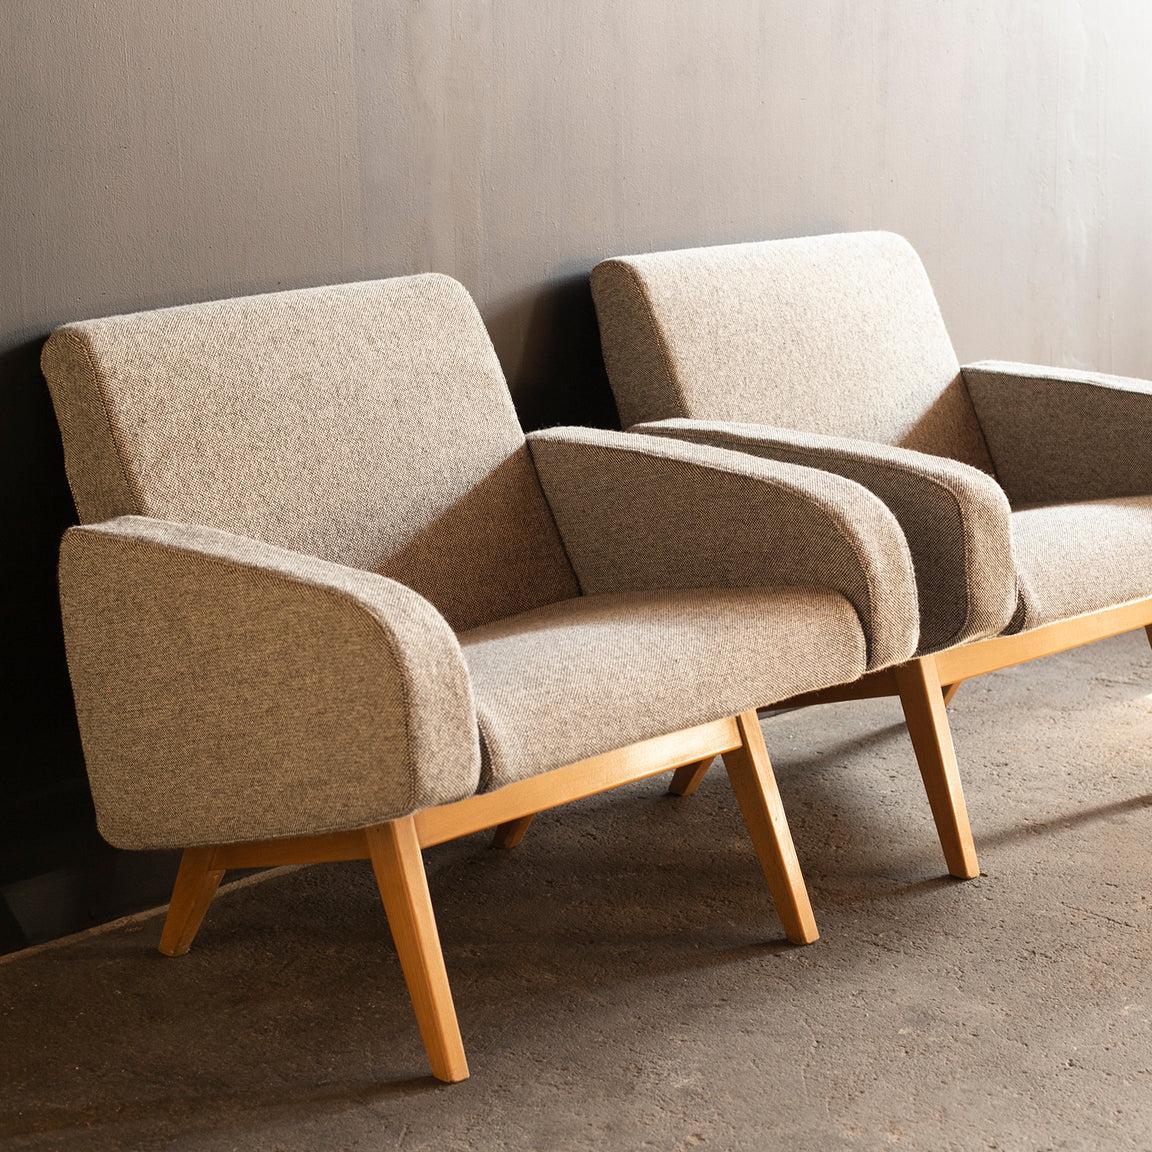 Ein Paar Sessel, entworfen von Joseph-André Motte für Steiner. Modell 740.
Für den Sessel 740 wurde er 1957 auf dem Salon des Arts Ménagers mit dem René-Gabriel-Preis ausgezeichnet.
Das Paar ist sehr seltene Modell, dass die Buche Holz für die Beine